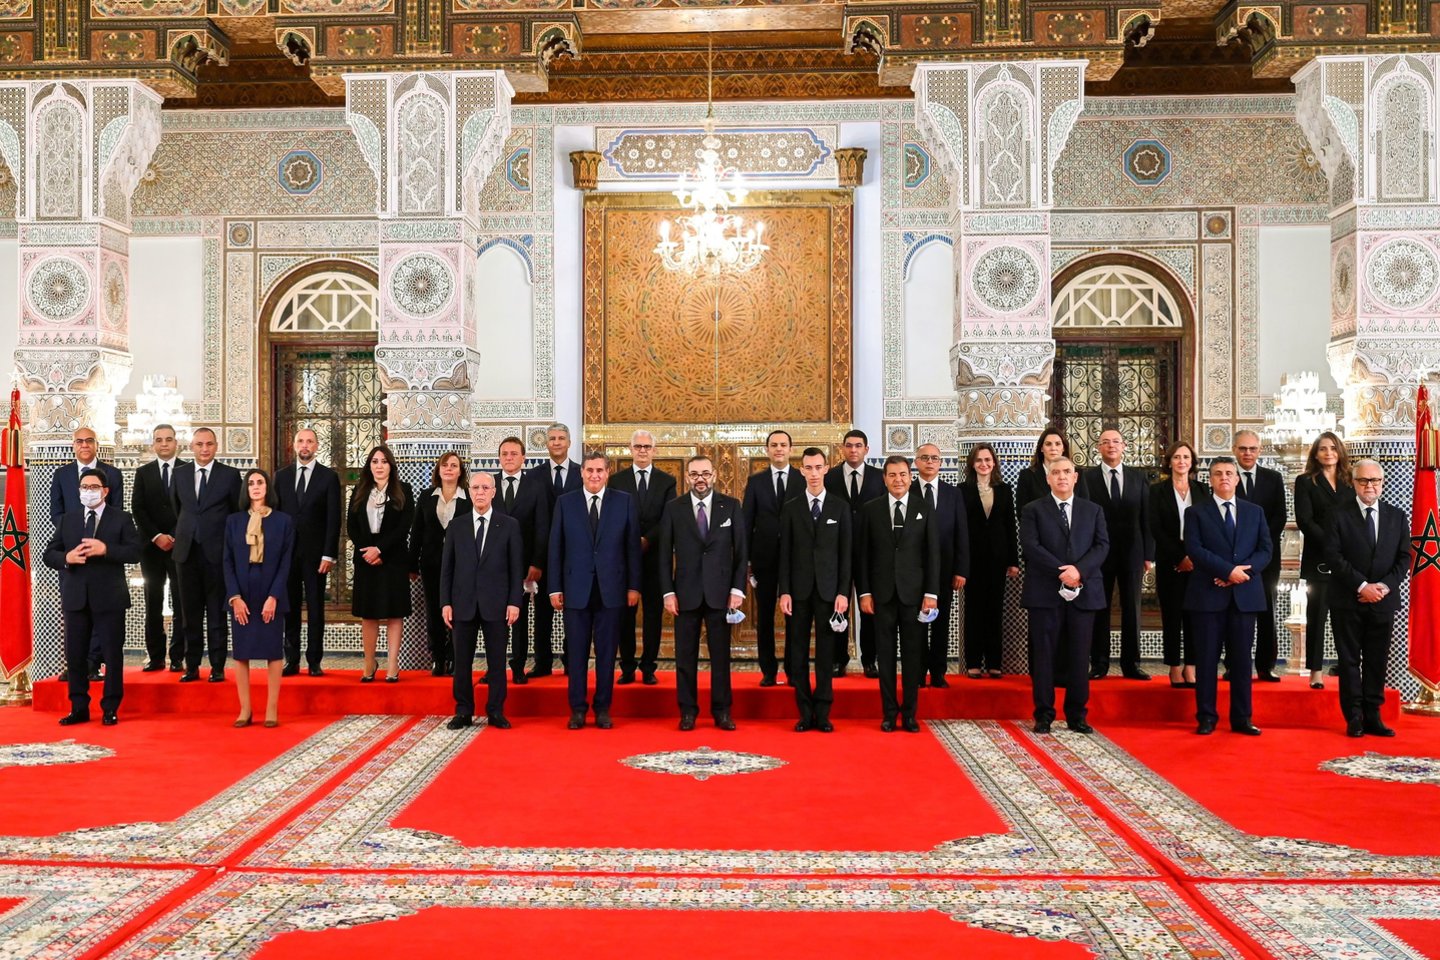  Maroko karalius pristatė naują vyriausybę.  <br> Reuters/Scanpix nuotr.